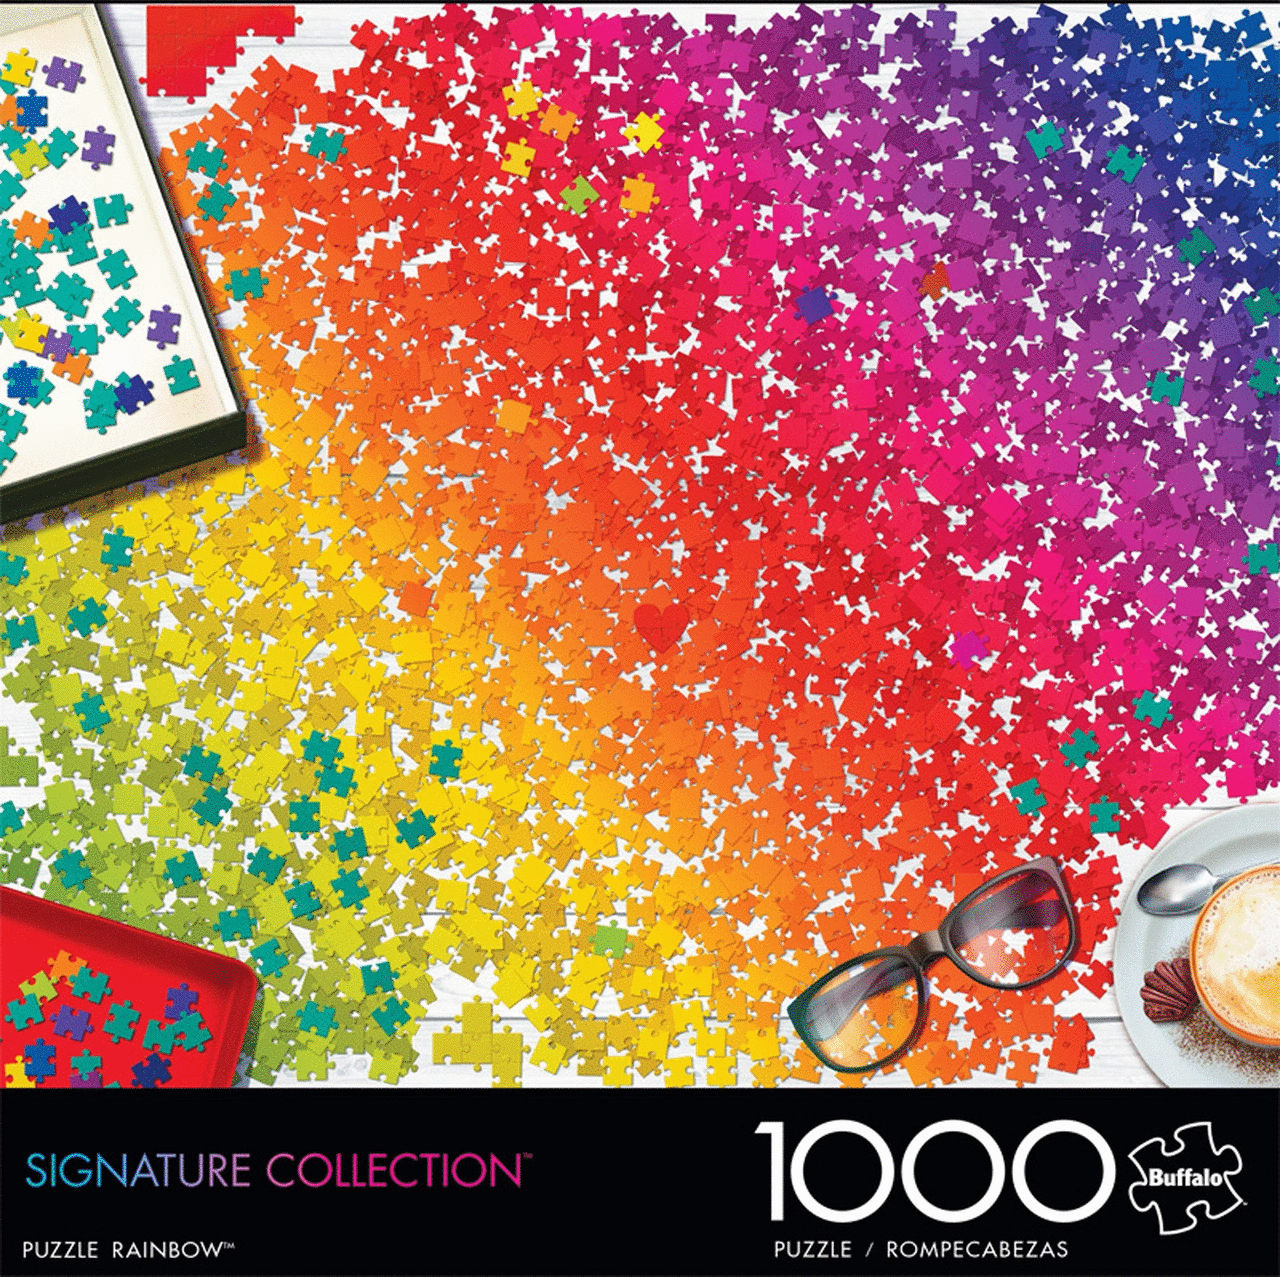 Rainbow: rompecabezas 1000 piezas. Rompecabezas. Cafebrería El